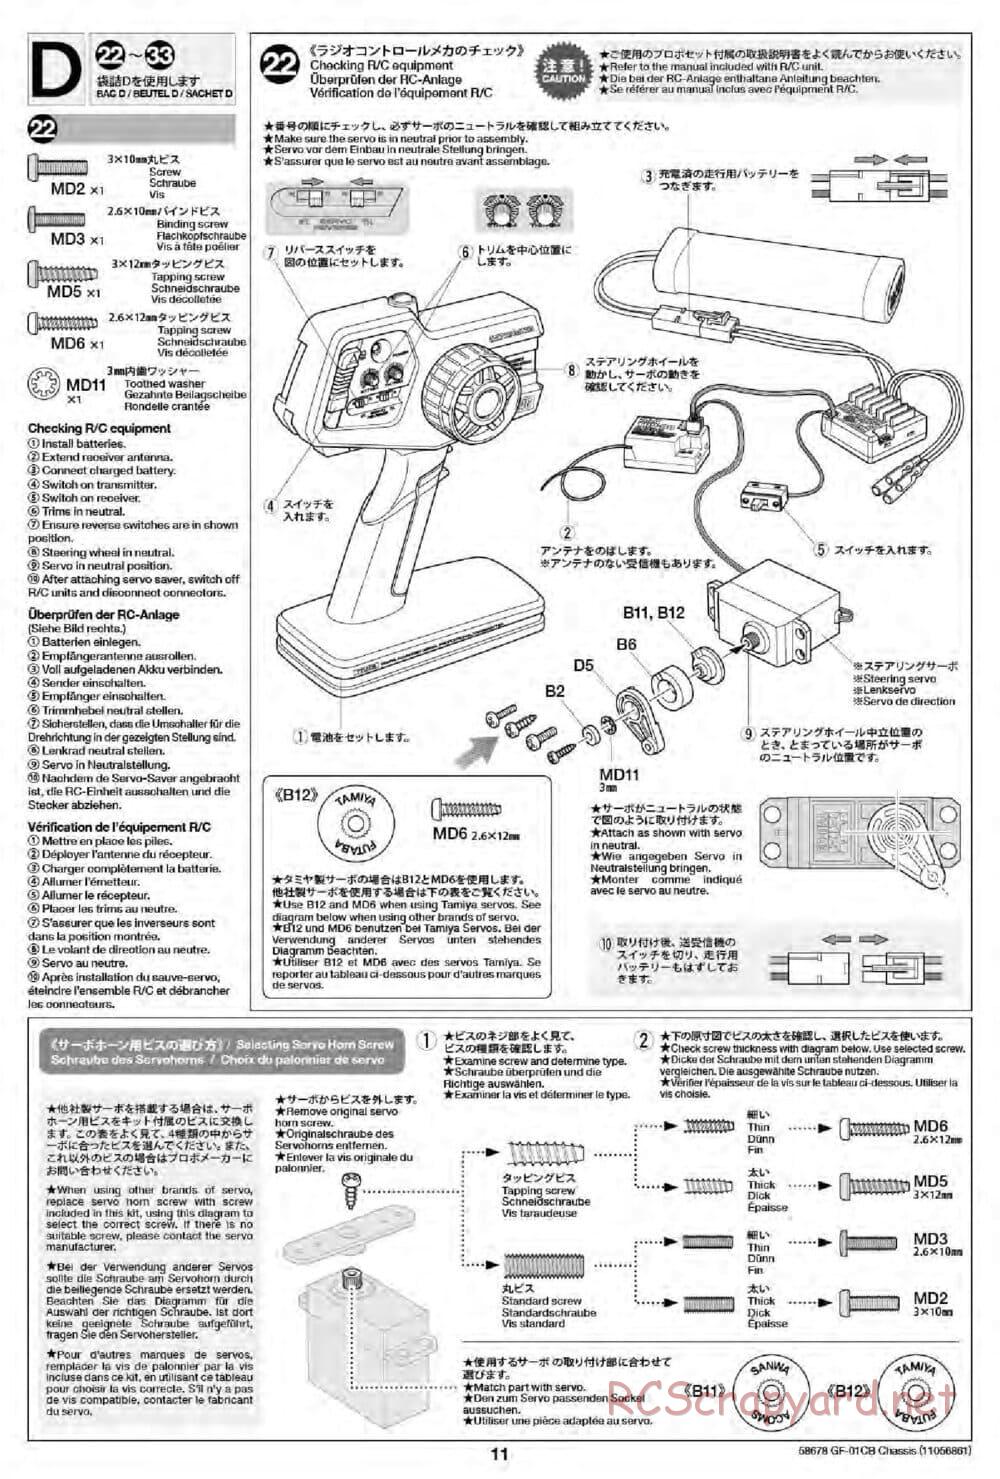 Tamiya - GF-01CB Chassis - Manual - Page 13